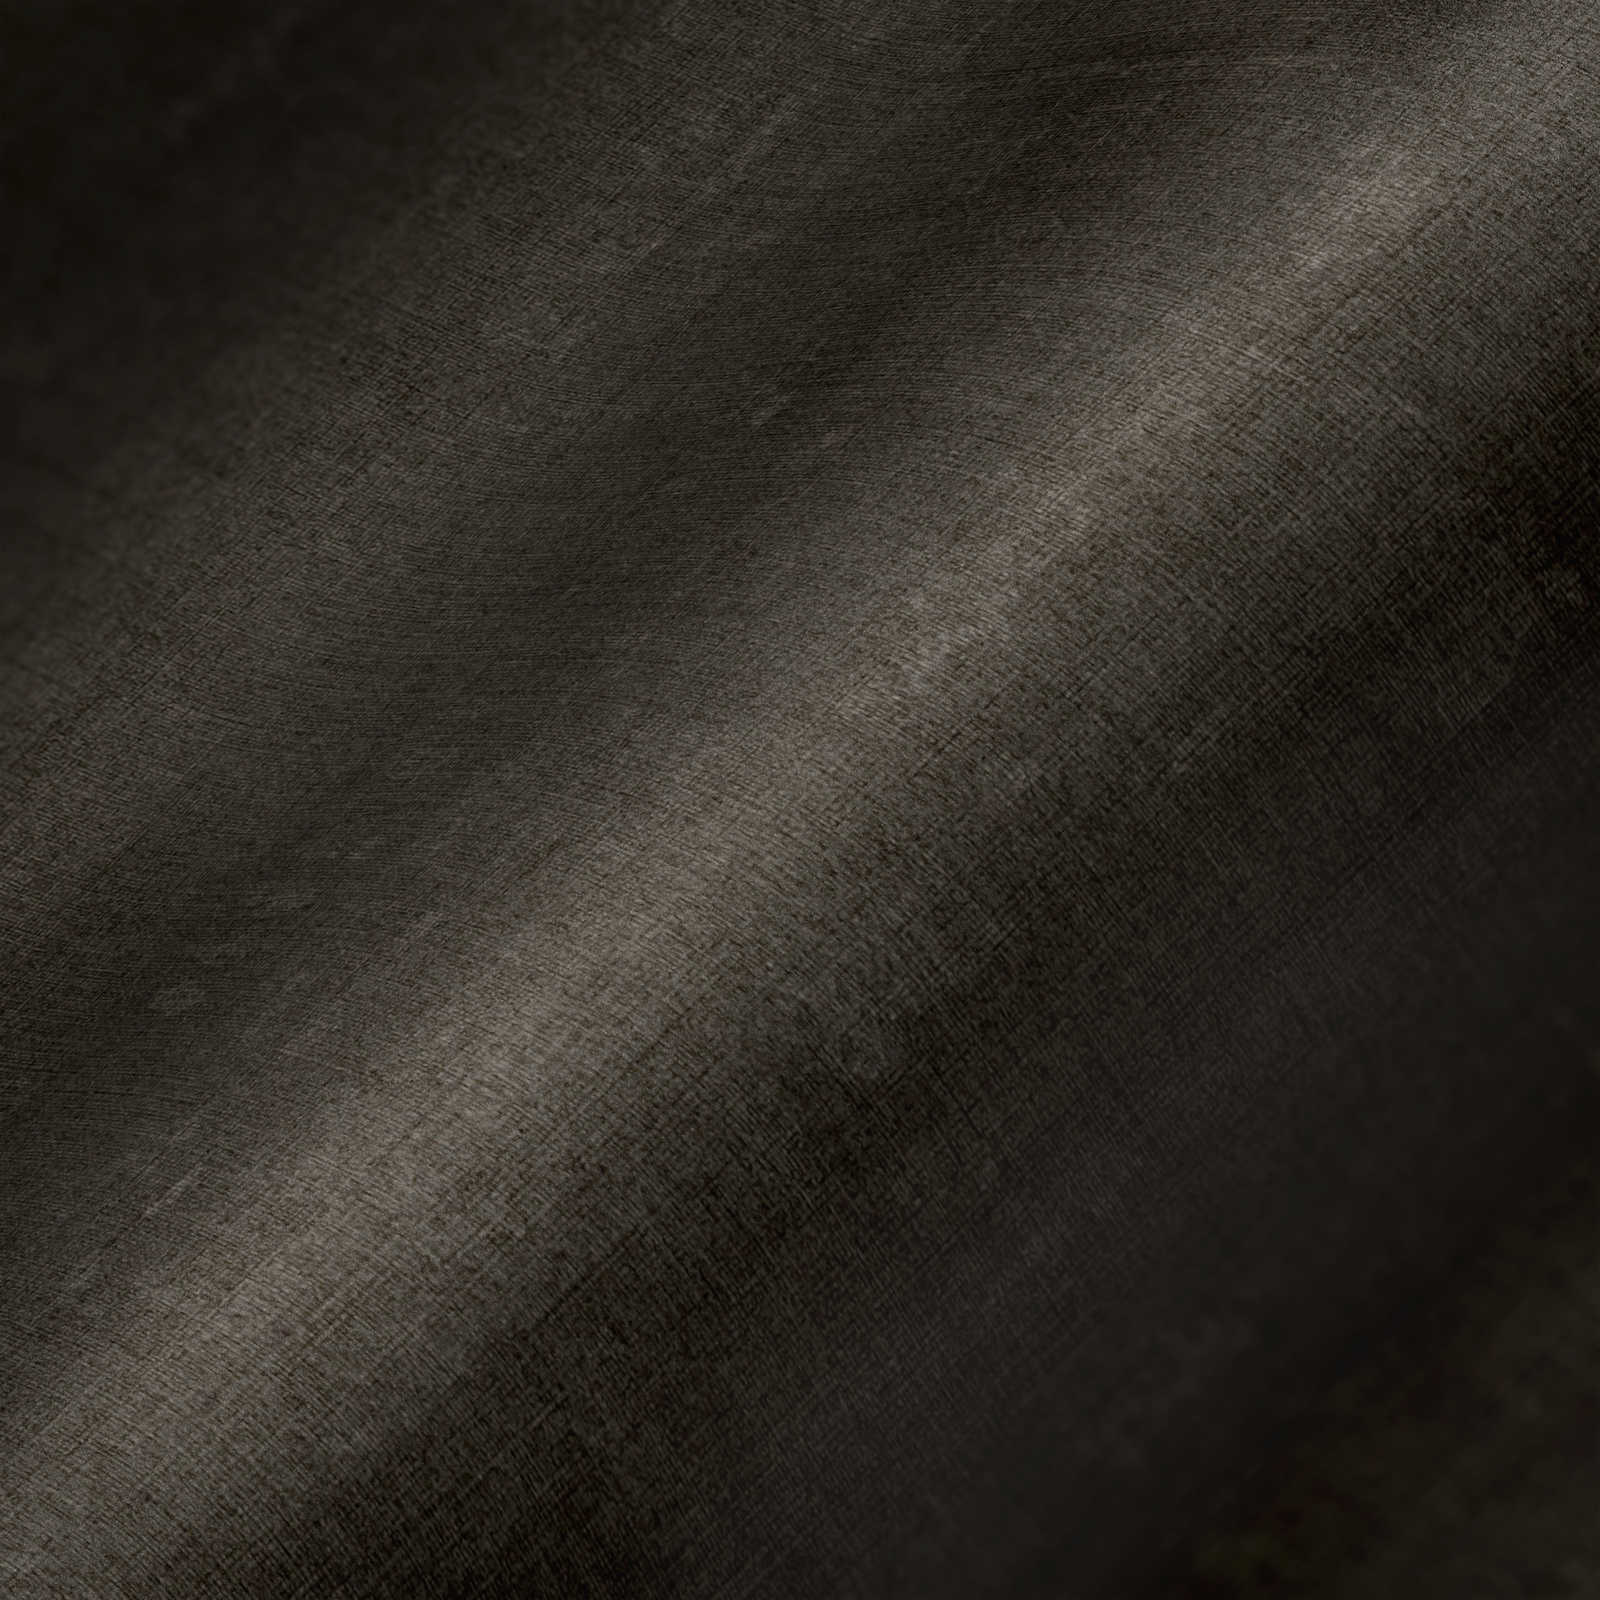             Papier peint marron uni et chiné avec gaufrage structuré
        